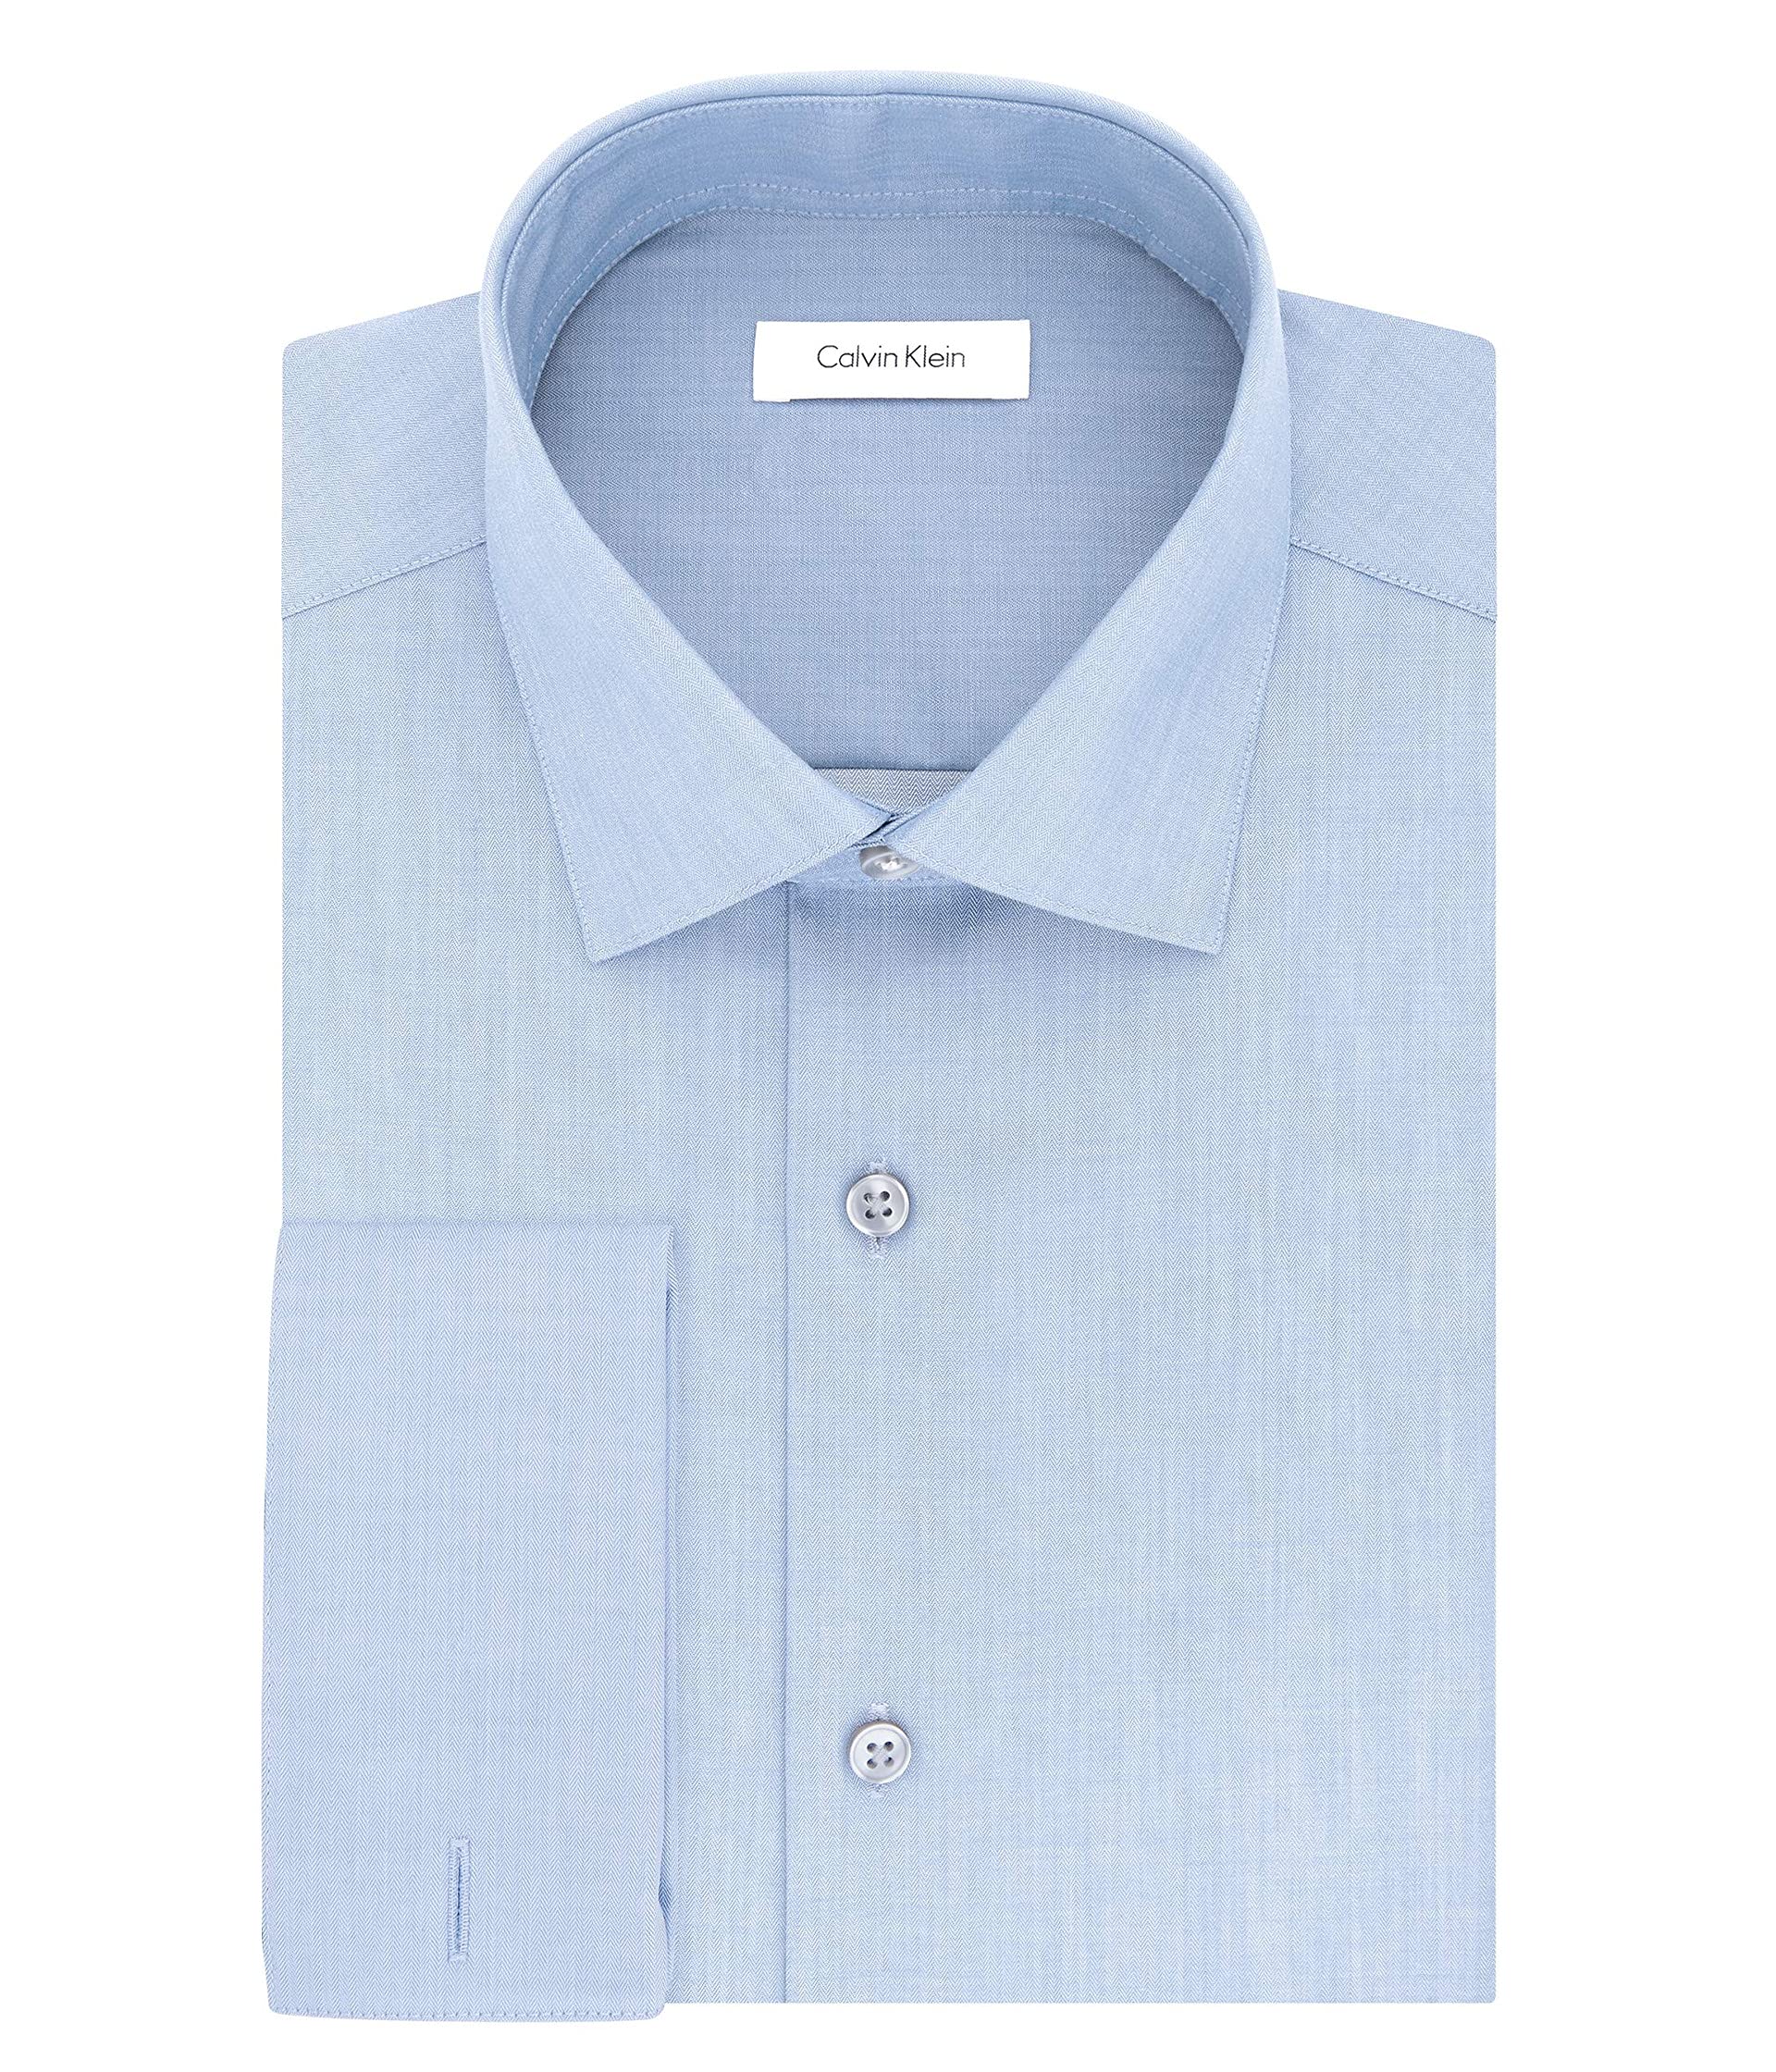 Приталенная классическая рубашка с французскими манжетами в елочку без железа Calvin Klein